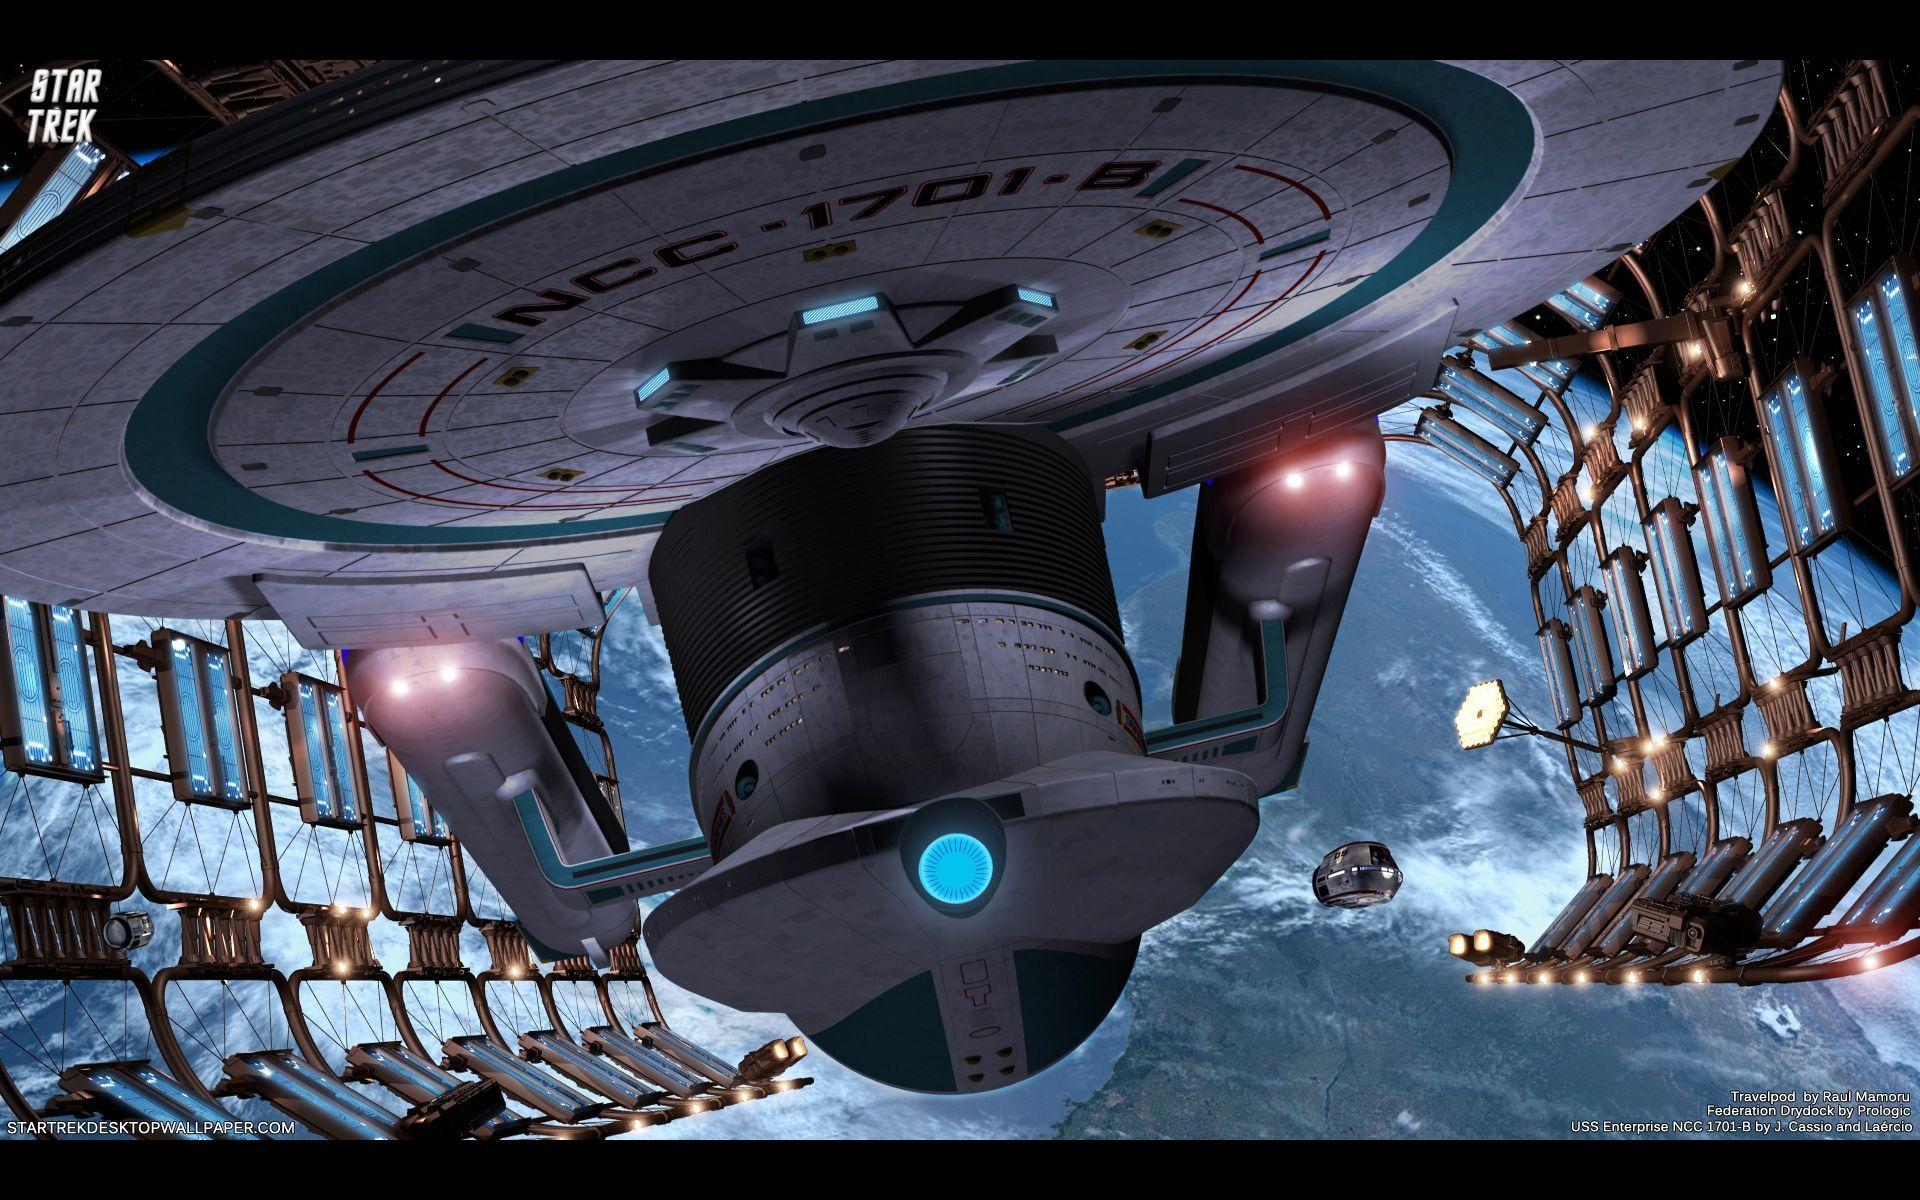 Star Trek.USS Enterprise NCC 1701 B. Trek Across The Stars